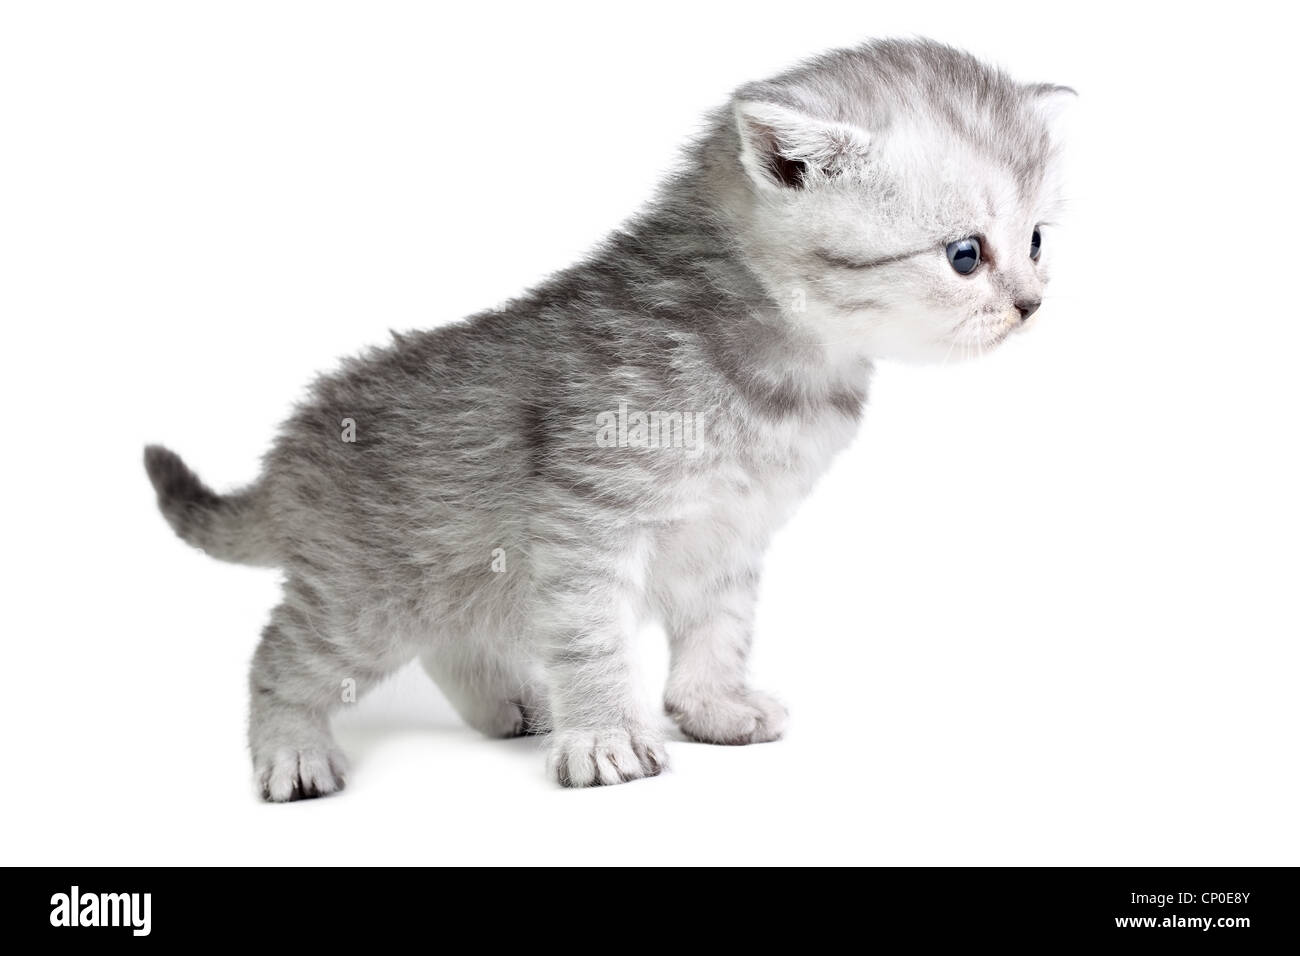 Little british kitten isolated on the white Stock Photo